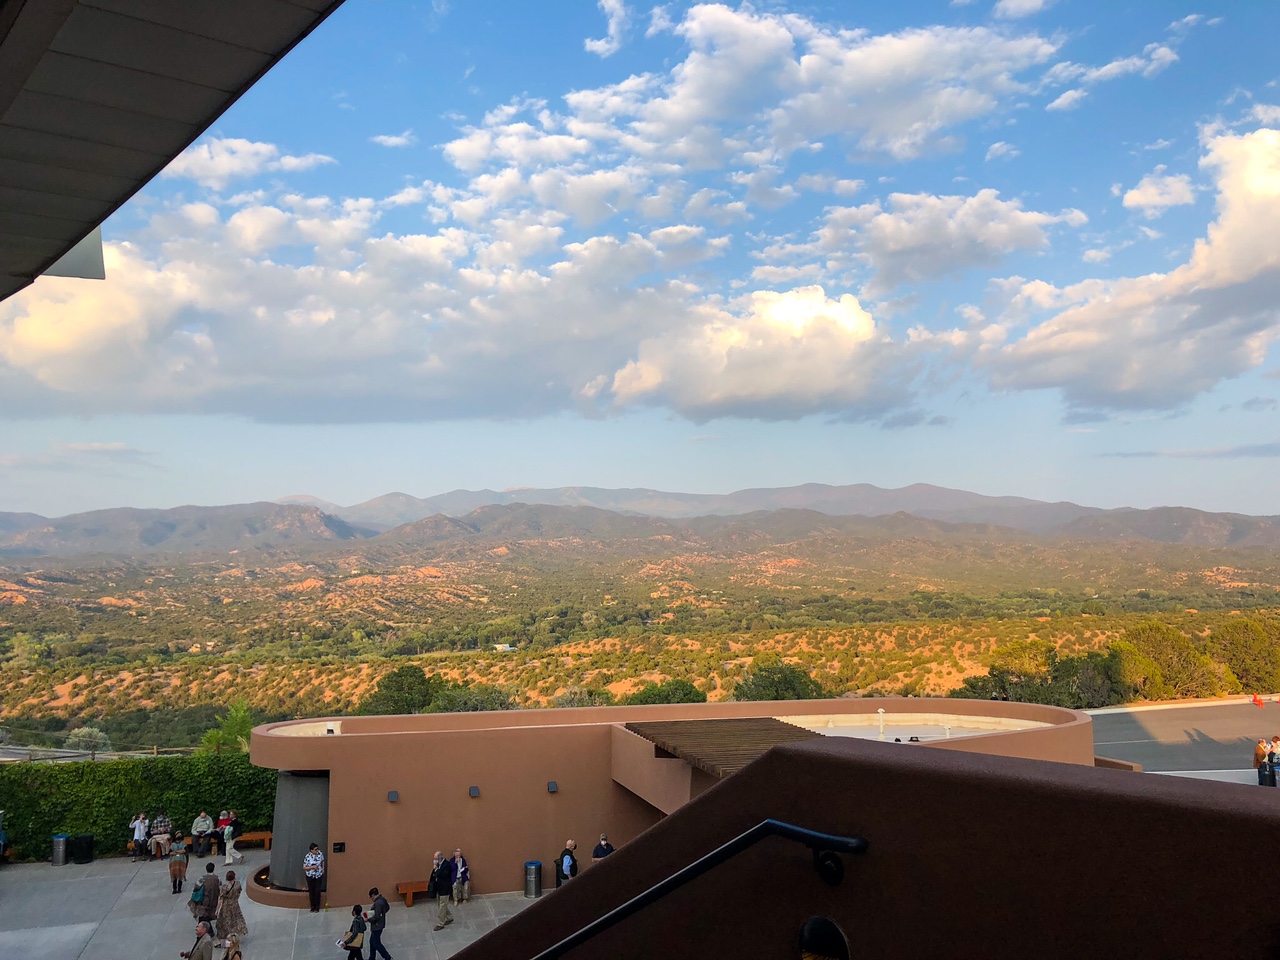 View from Santa Fe opera